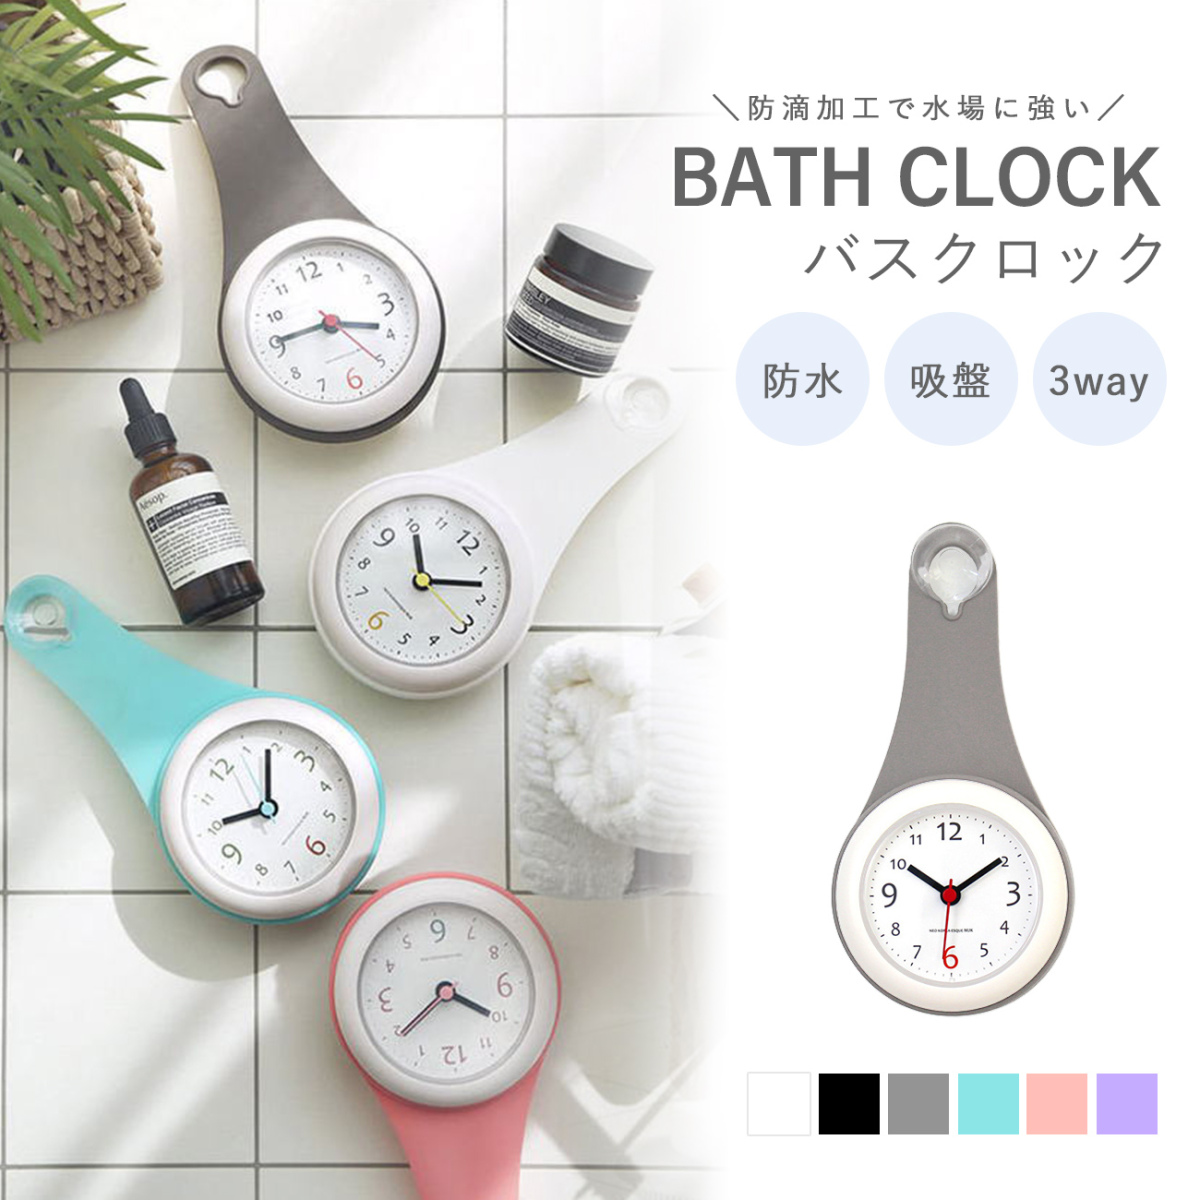 新色 バスクロック 浴室 バスタイム 吸盤付き シンプル お風呂 タイマー 時計